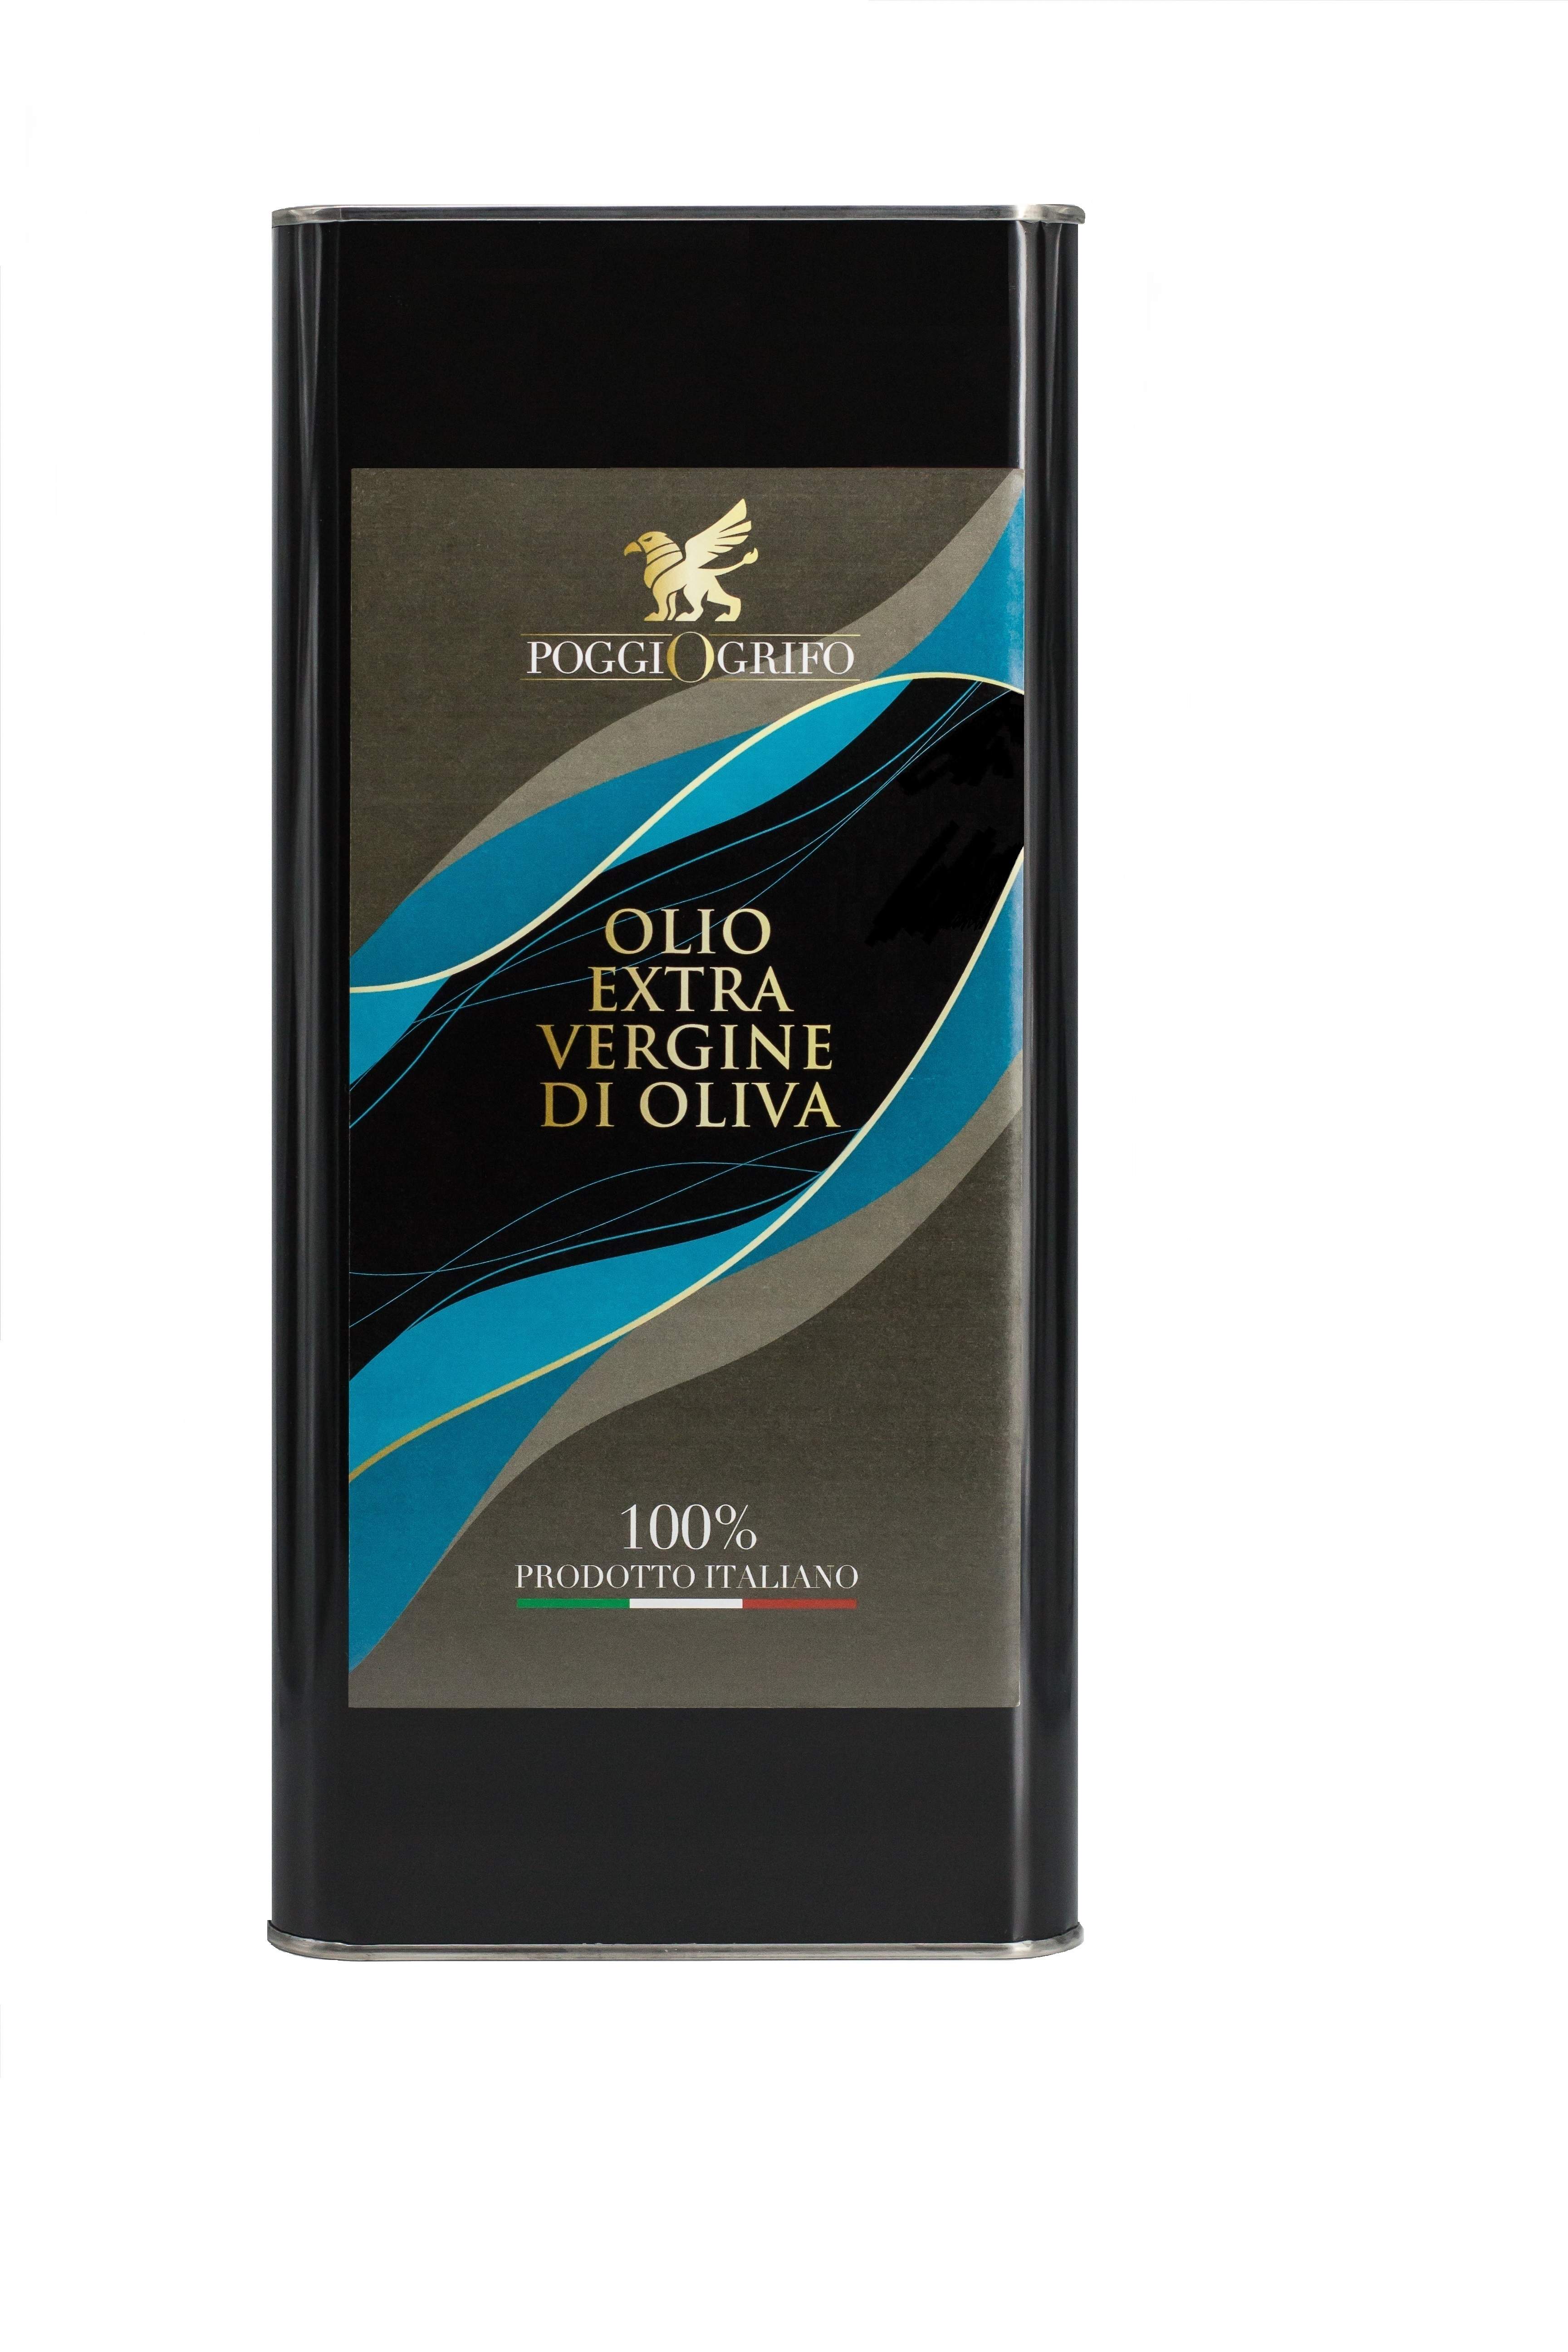 Olio extra vergine di oliva 100% ITALIANO "Fruttato Fascia Blu" Latta da 5 Litri   -